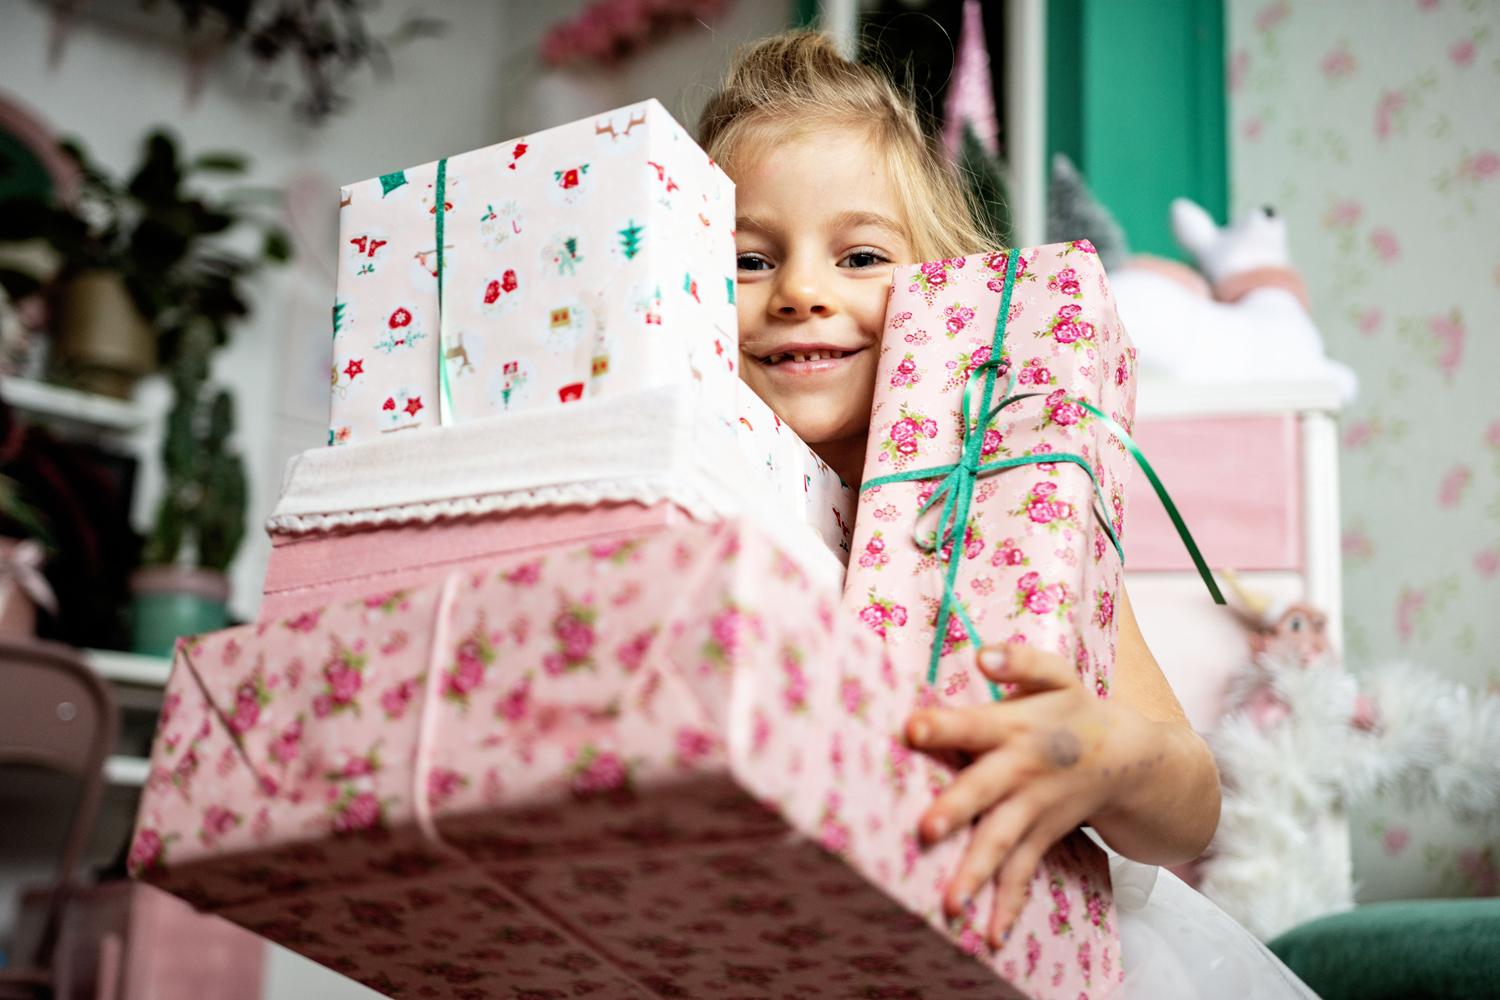 Cadeaux de Noël : un budget de 50 à 100 euros pour les enfants